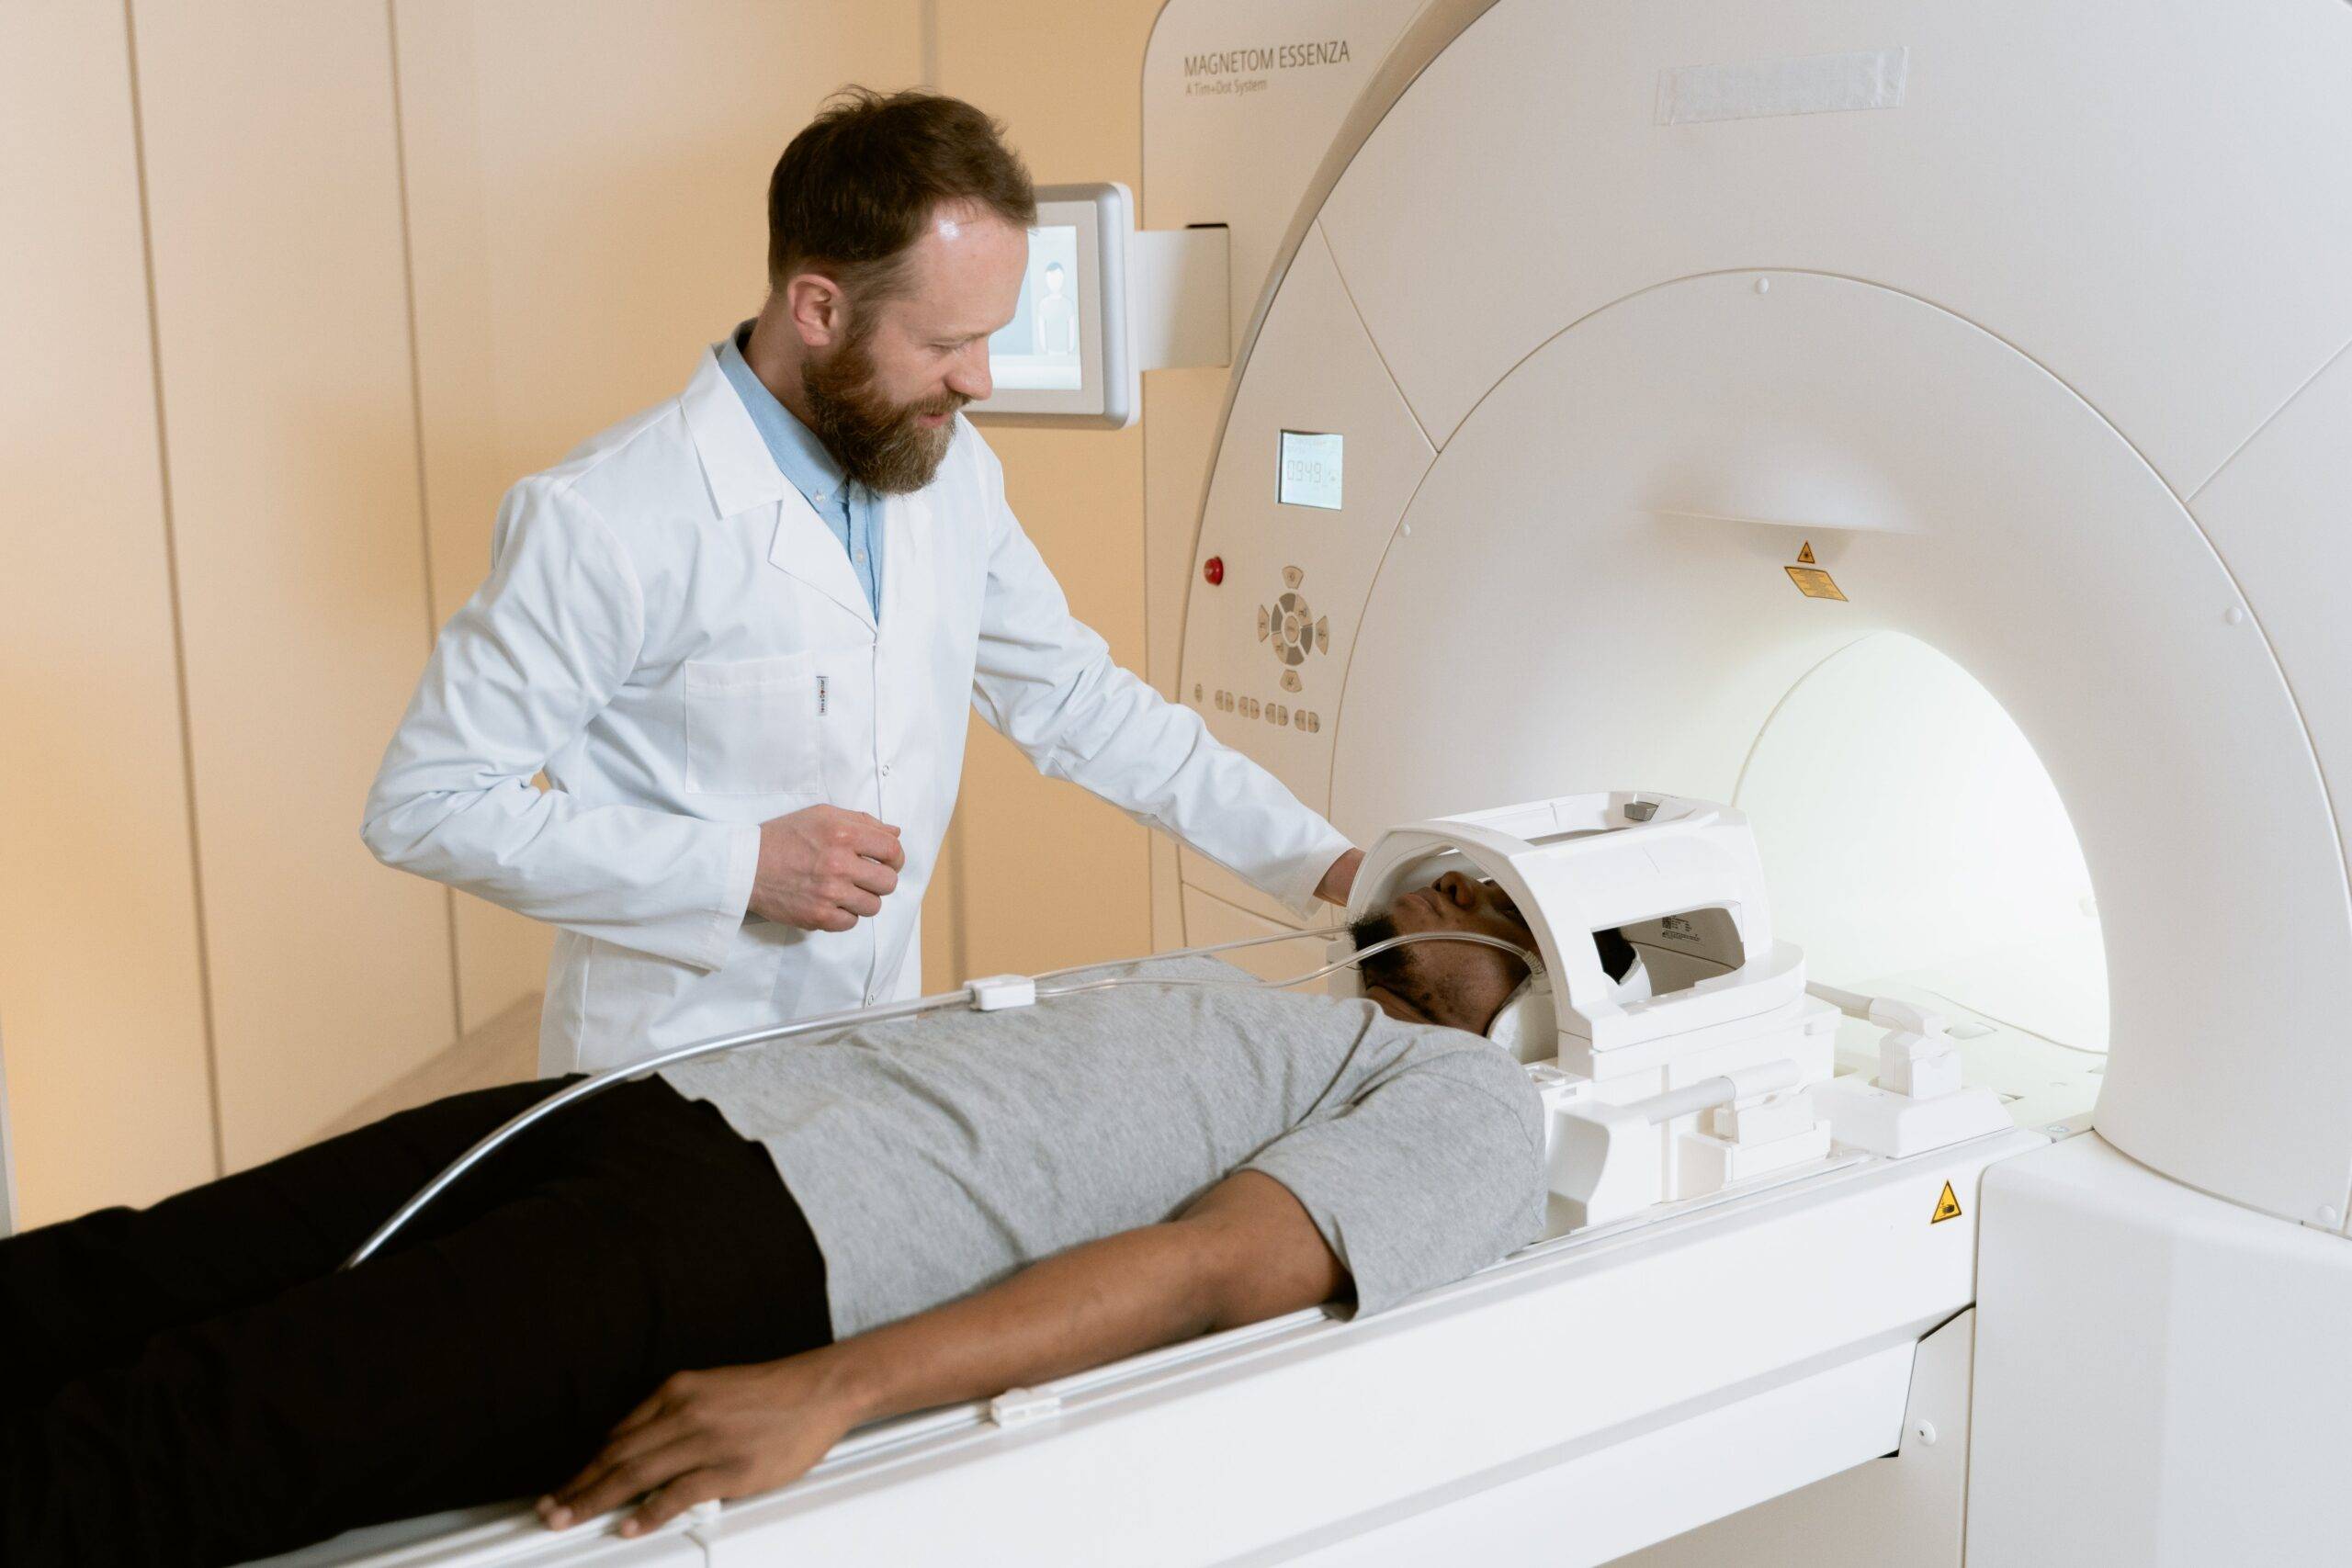 Strahlentherapie in der Radiologie: Präzise Krebsbehandlung für bessere Heilungschancen